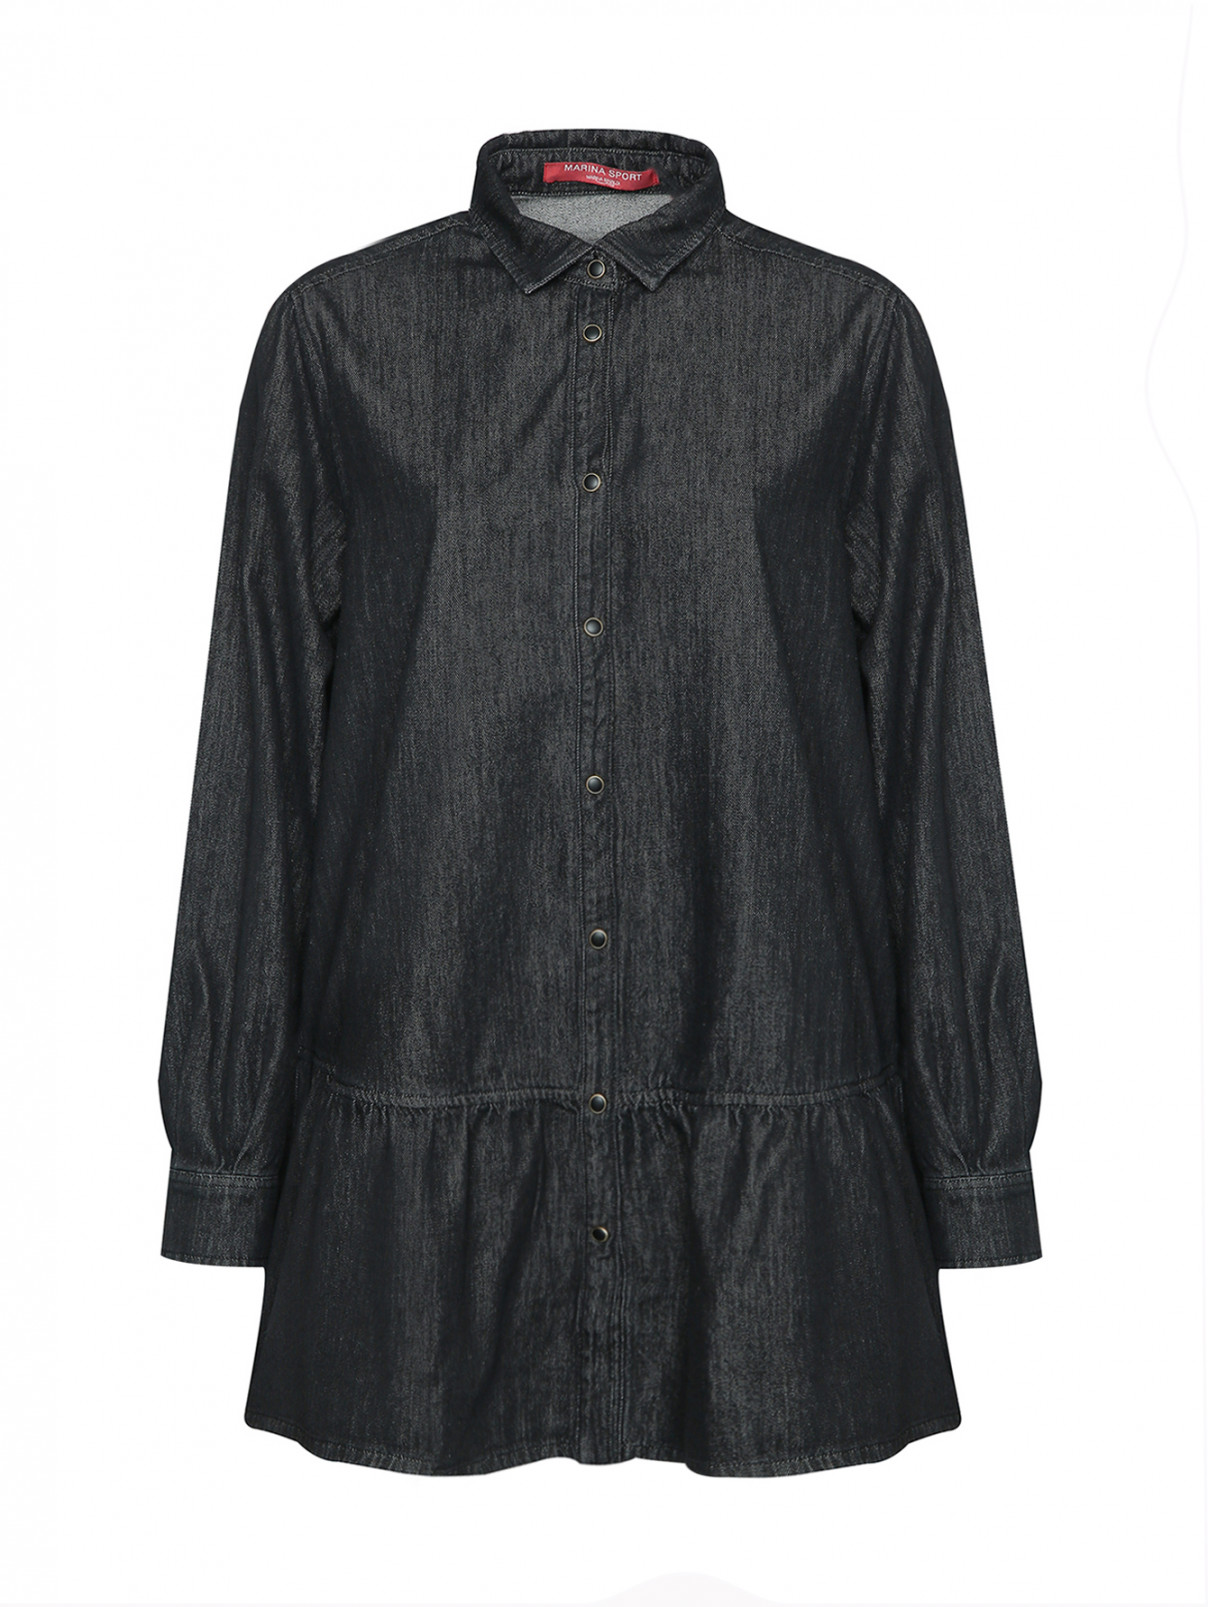 Джинсовая рубашка с воланами Marina Rinaldi  –  Общий вид  – Цвет:  Серый